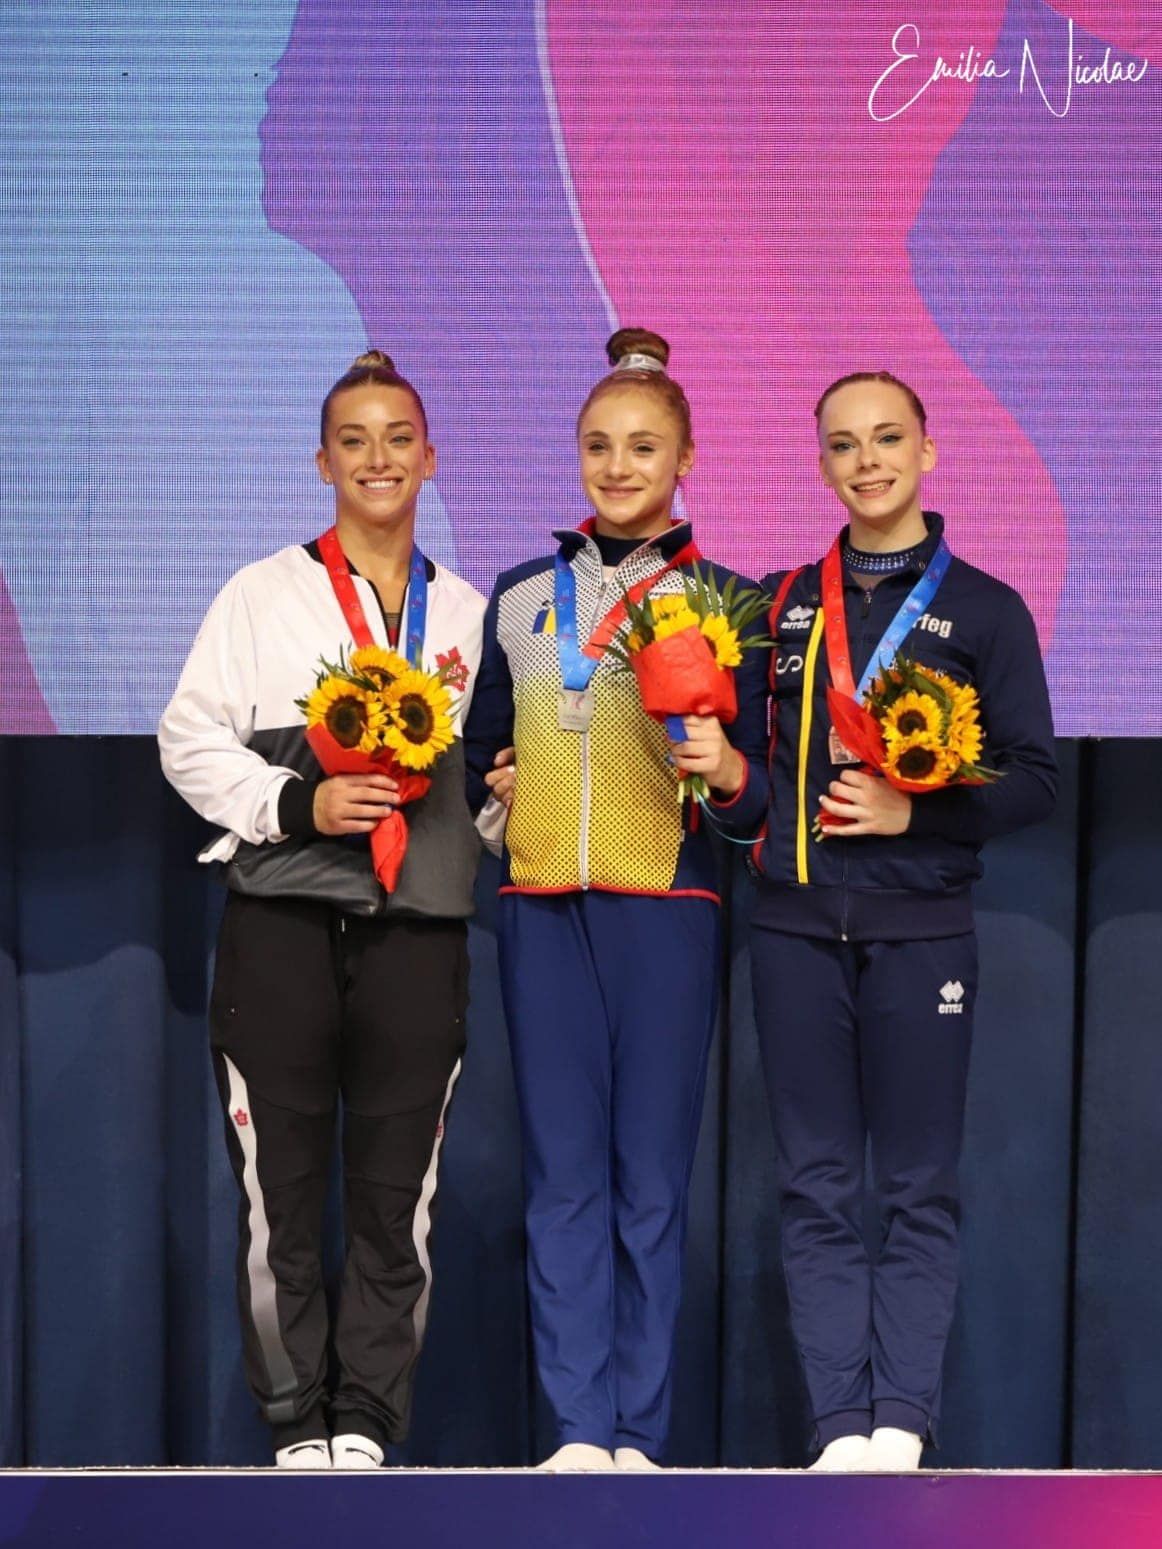 Sabrina Voinea PROVOCES Simone Biles op het WK Artistieke Gymnastiek: ‘Ik vecht zij aan zij met haar’